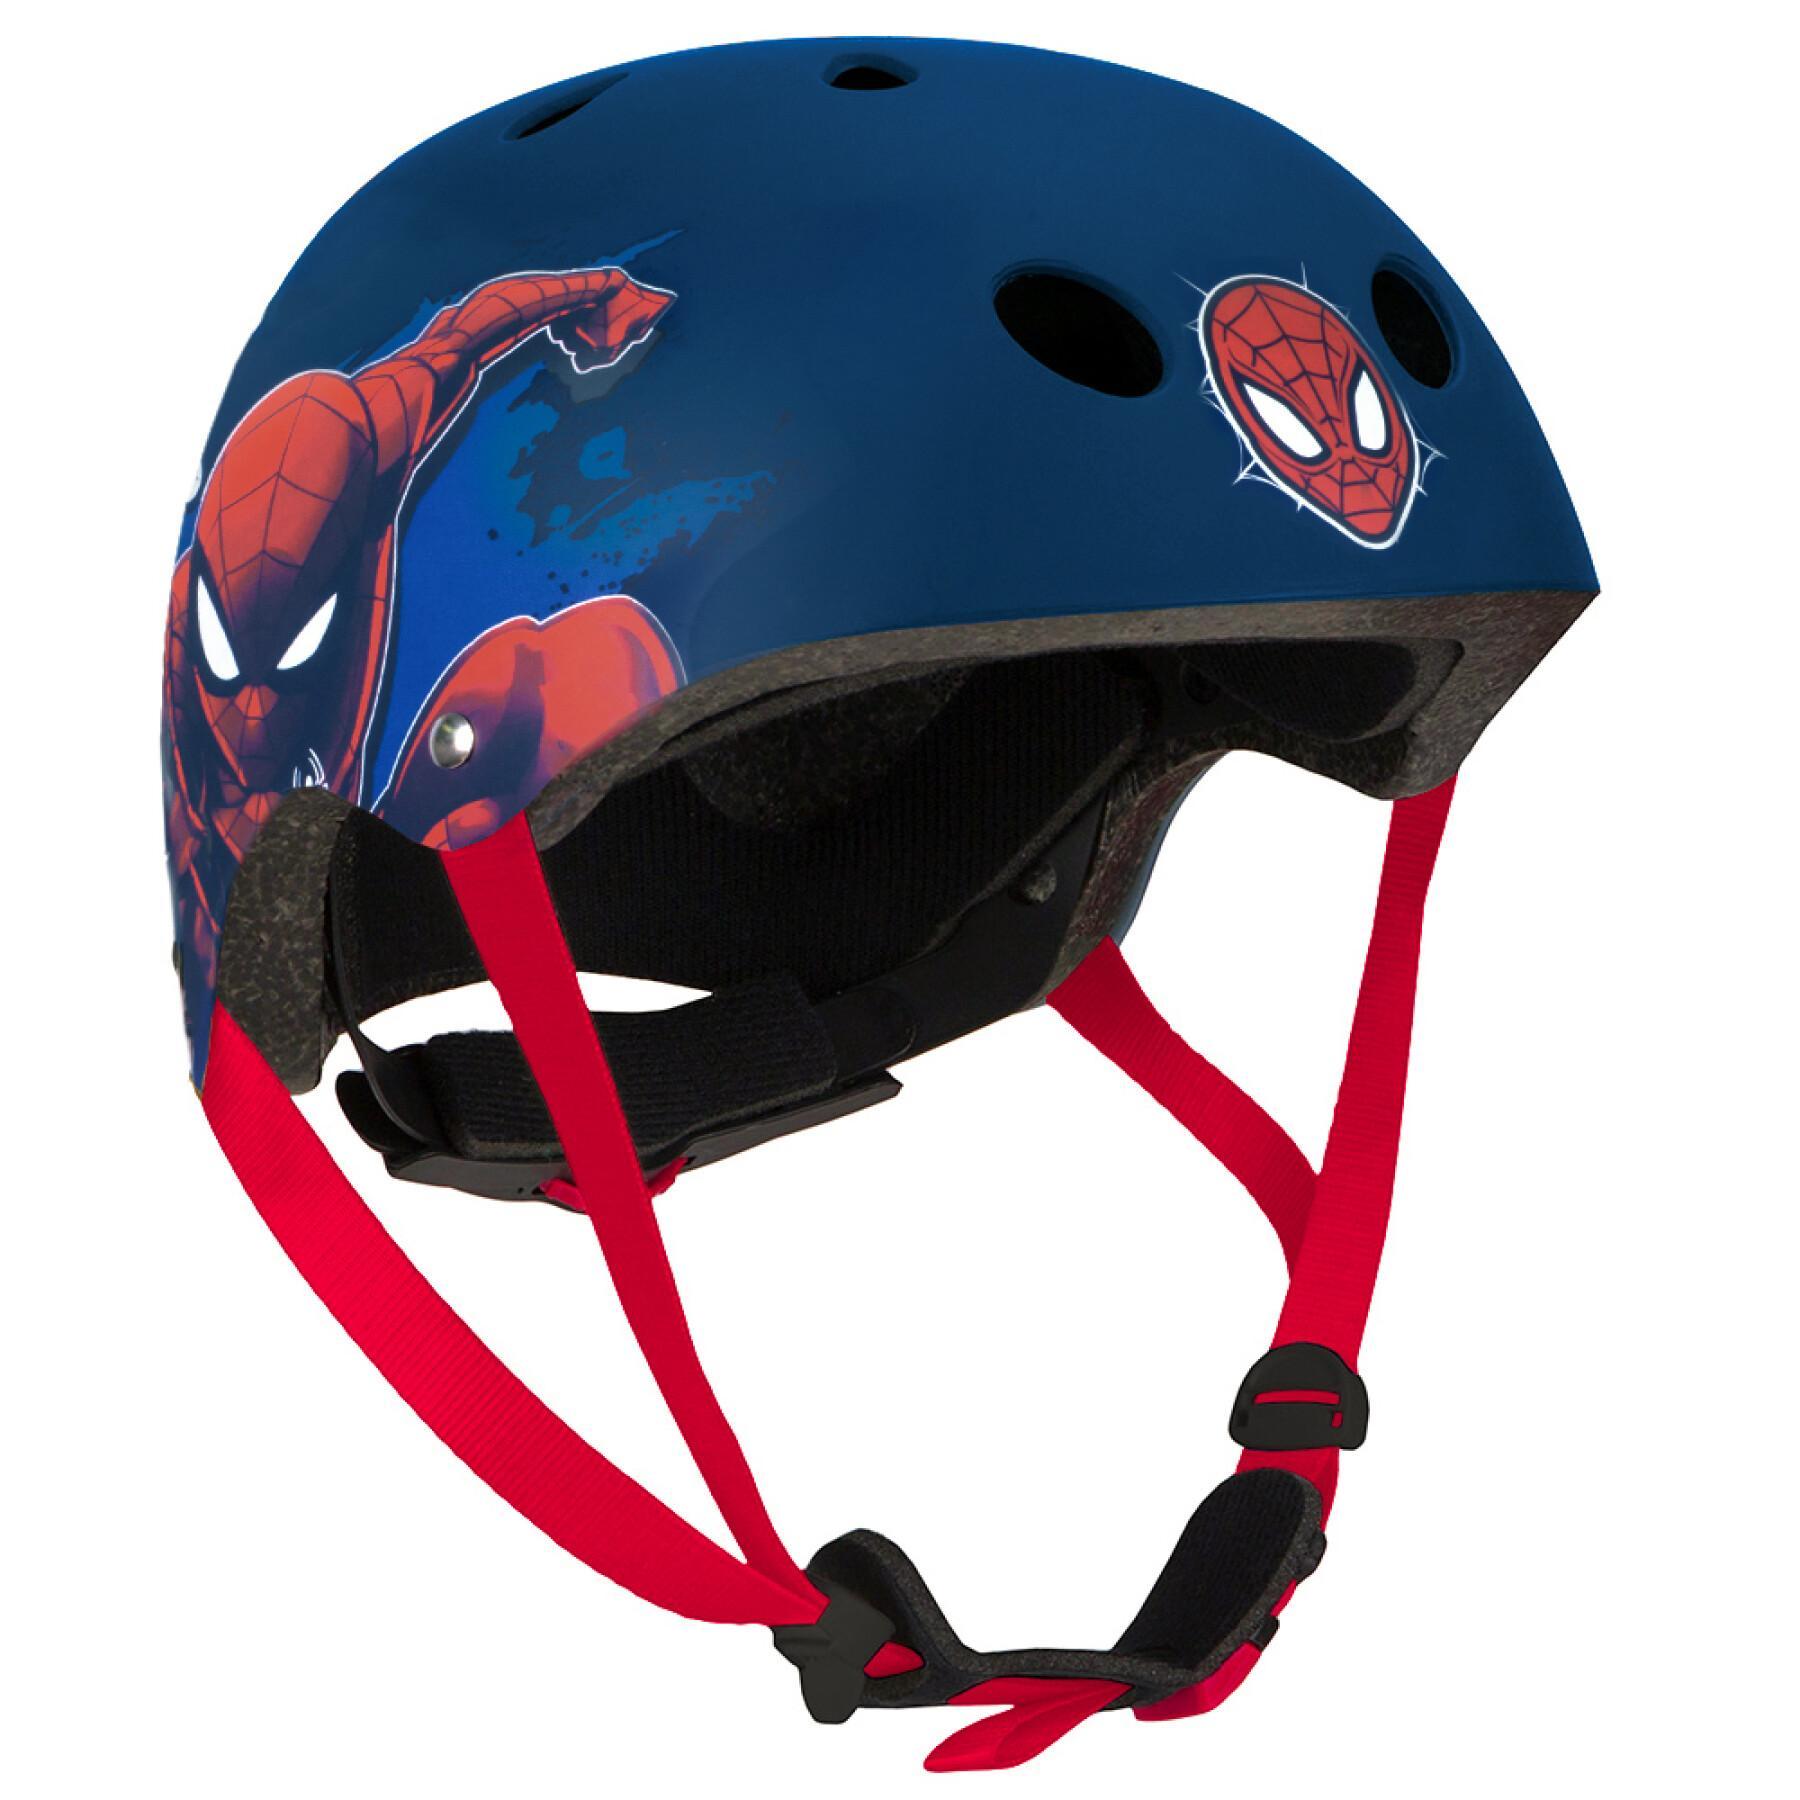 Casque moto spiderman - Équipement moto